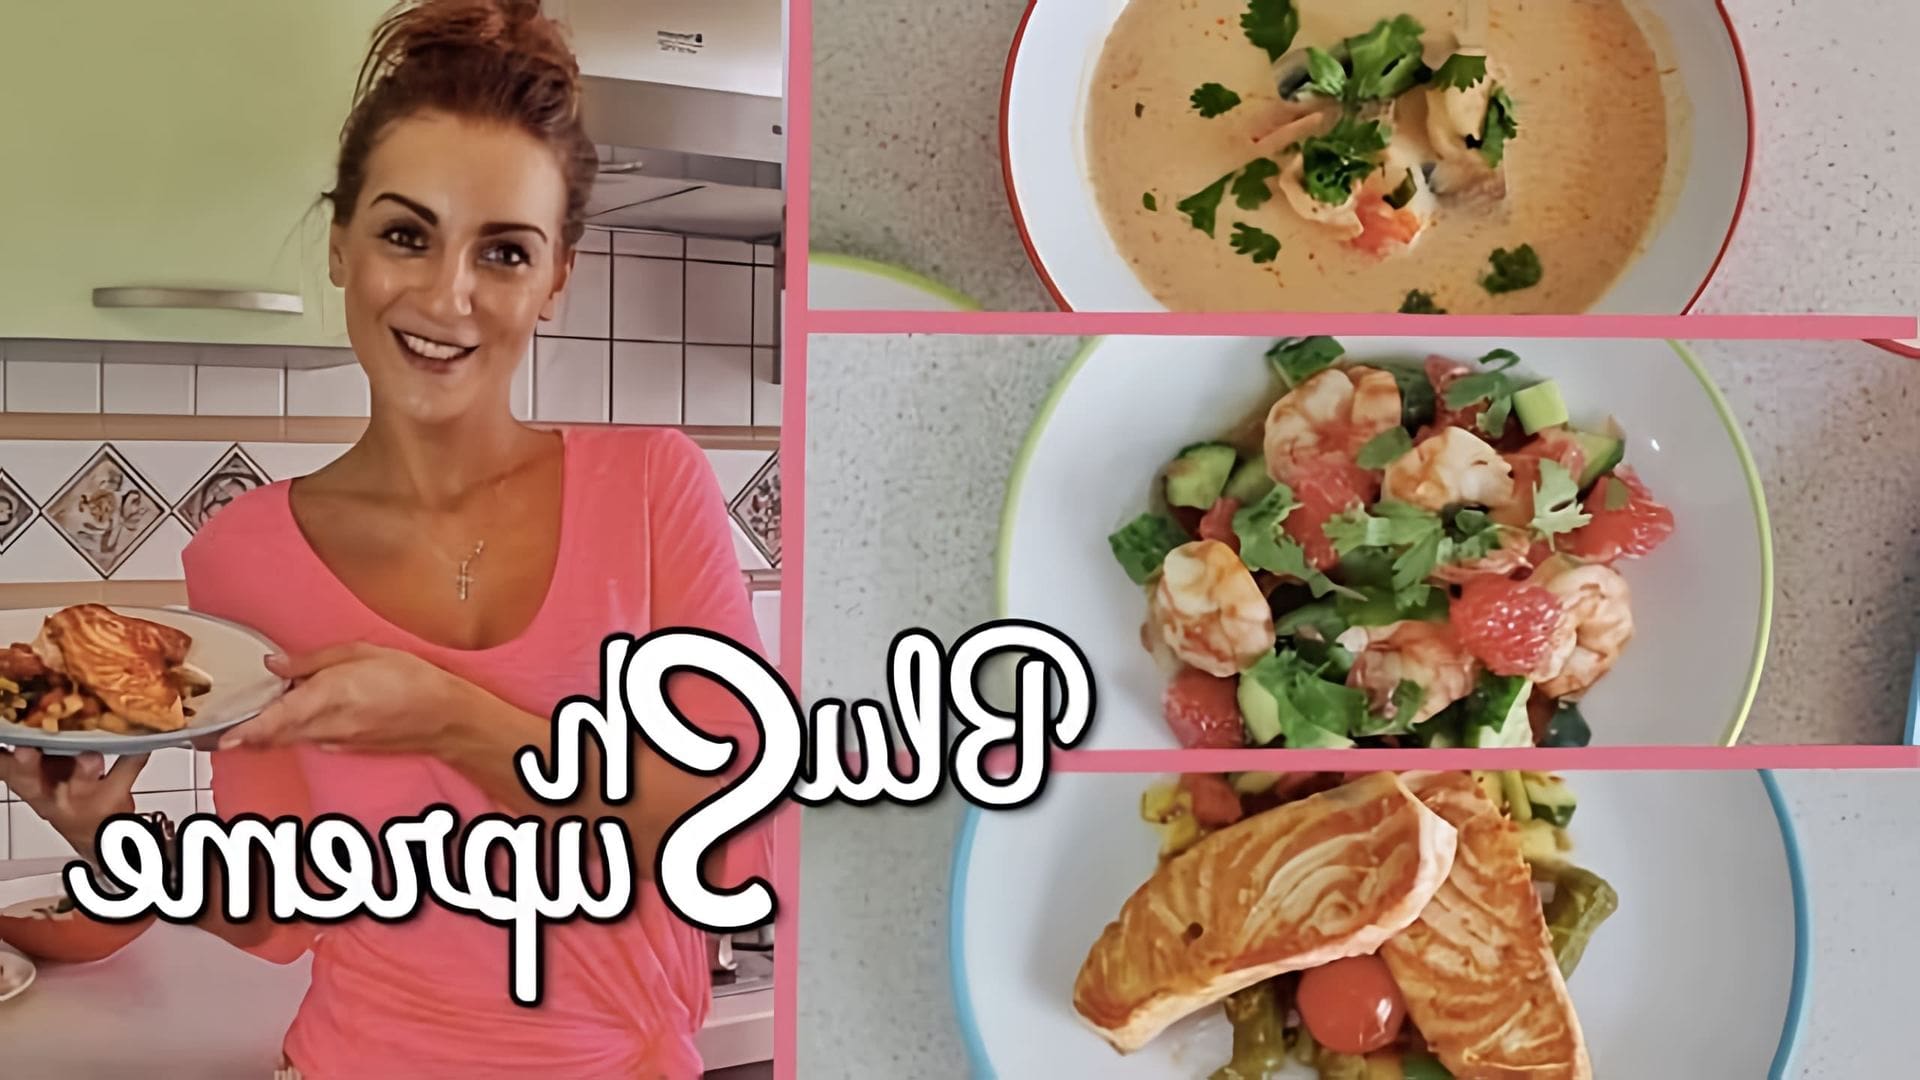 В этом видео Люда Блажь, блогер и кулинар, представляет свой первый кулинарный эксперимент